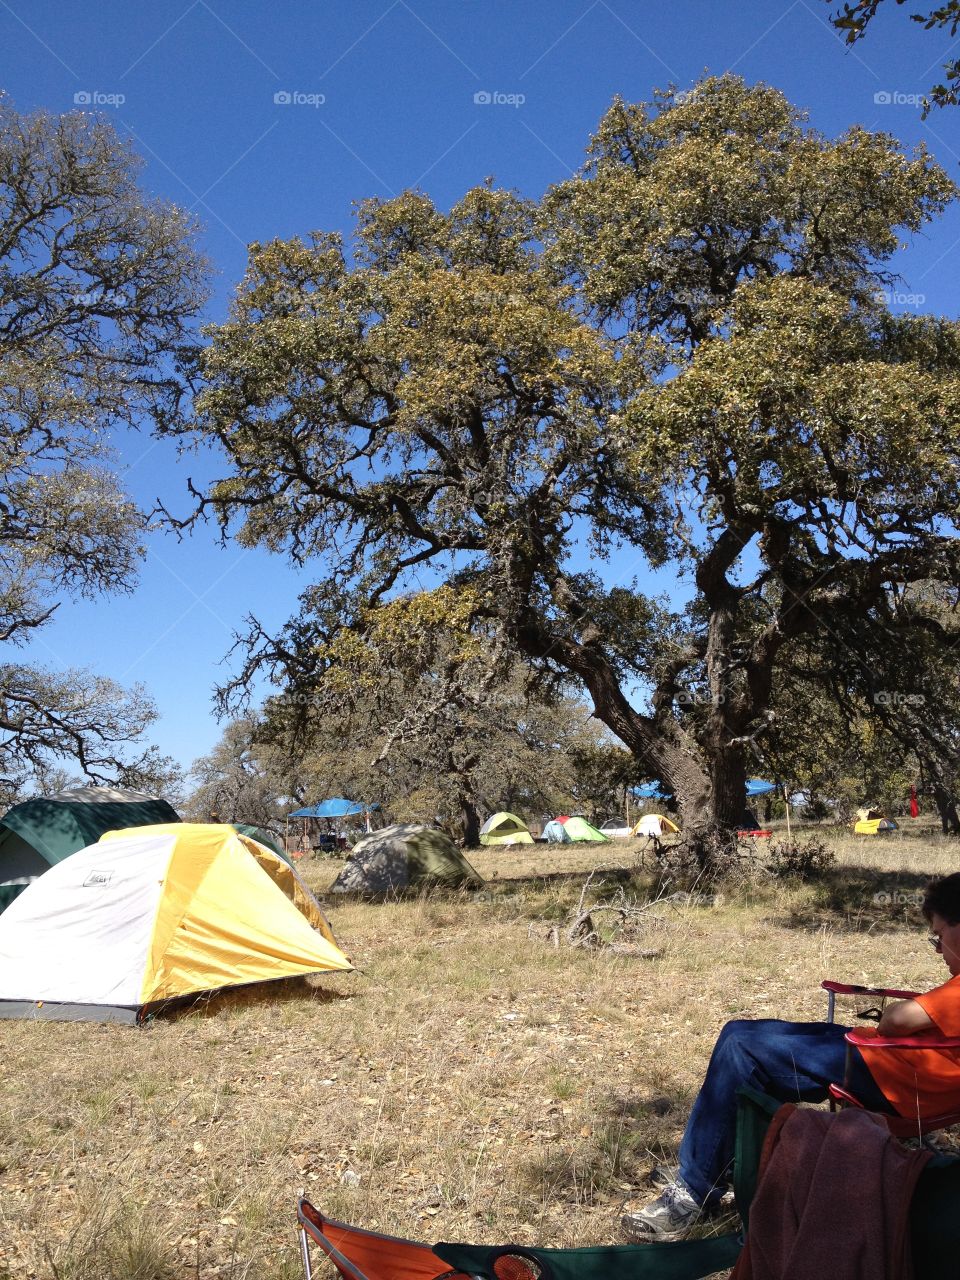 Texas camping